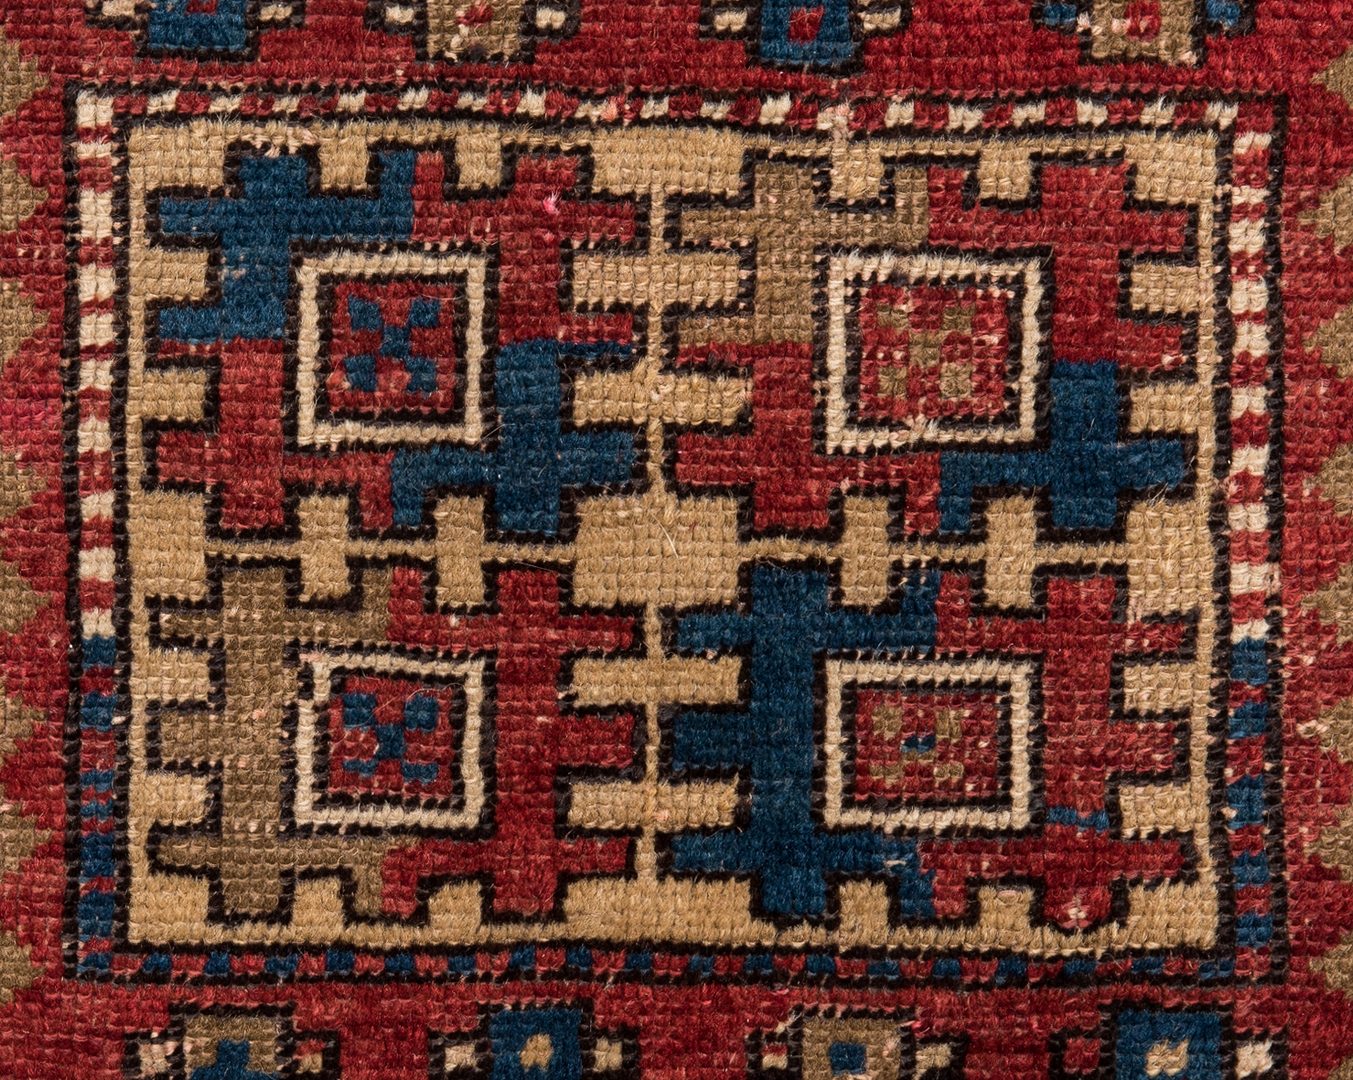 Lot 744: Antique Caucasian Kazak Rug, 7' x 4'8"